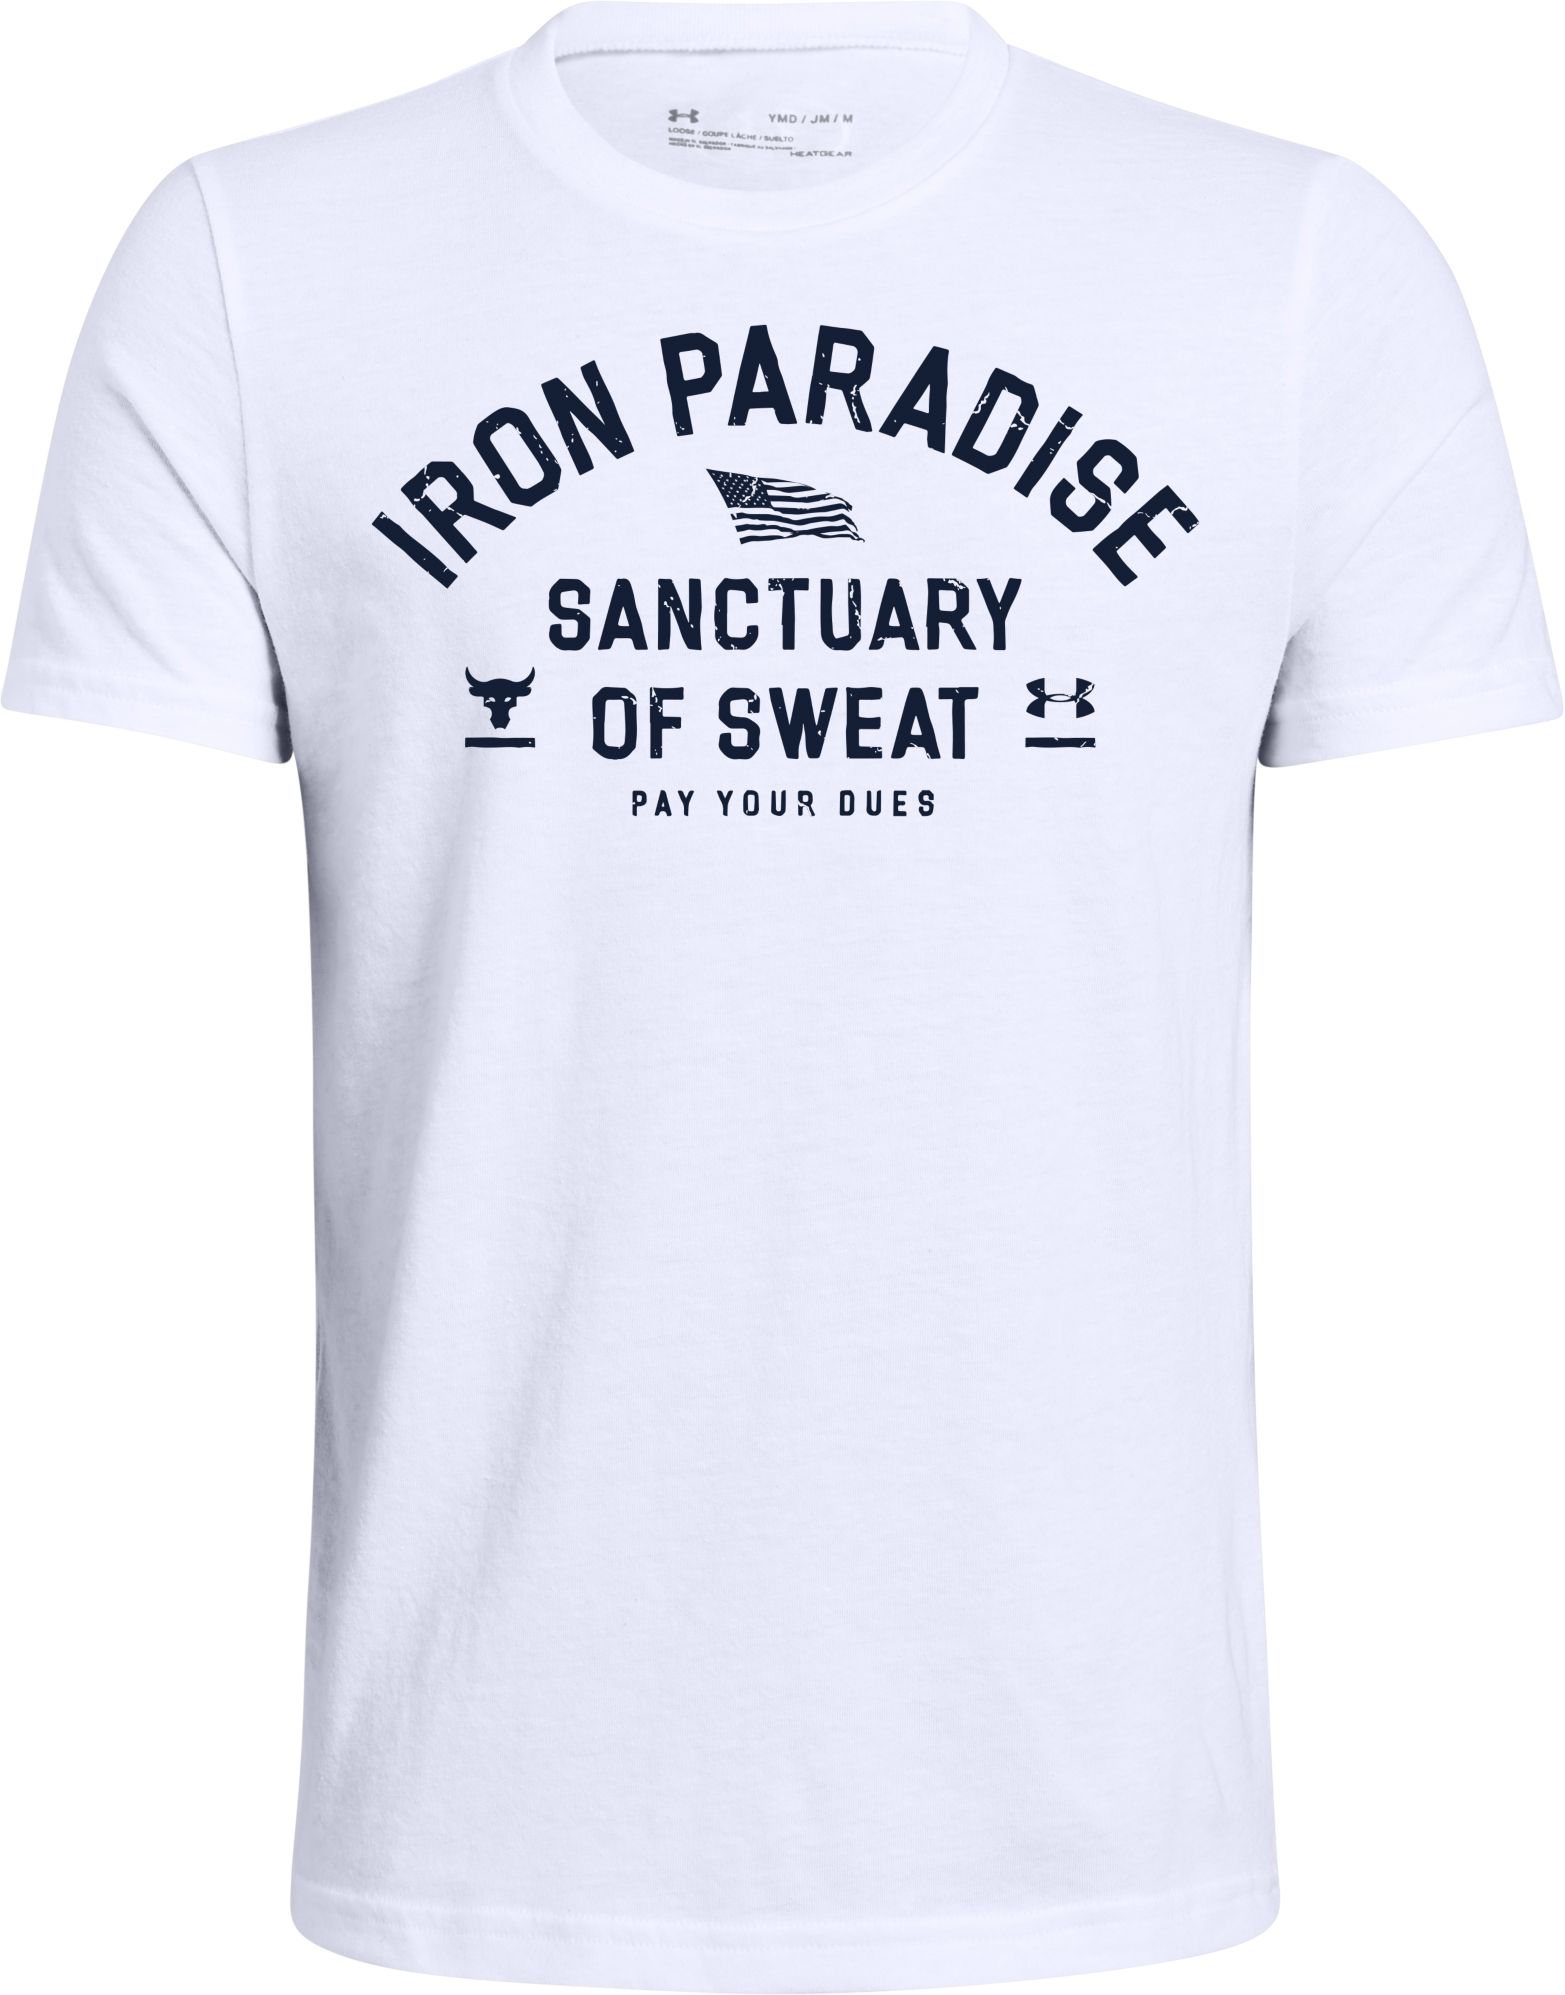 iron paradise clothing